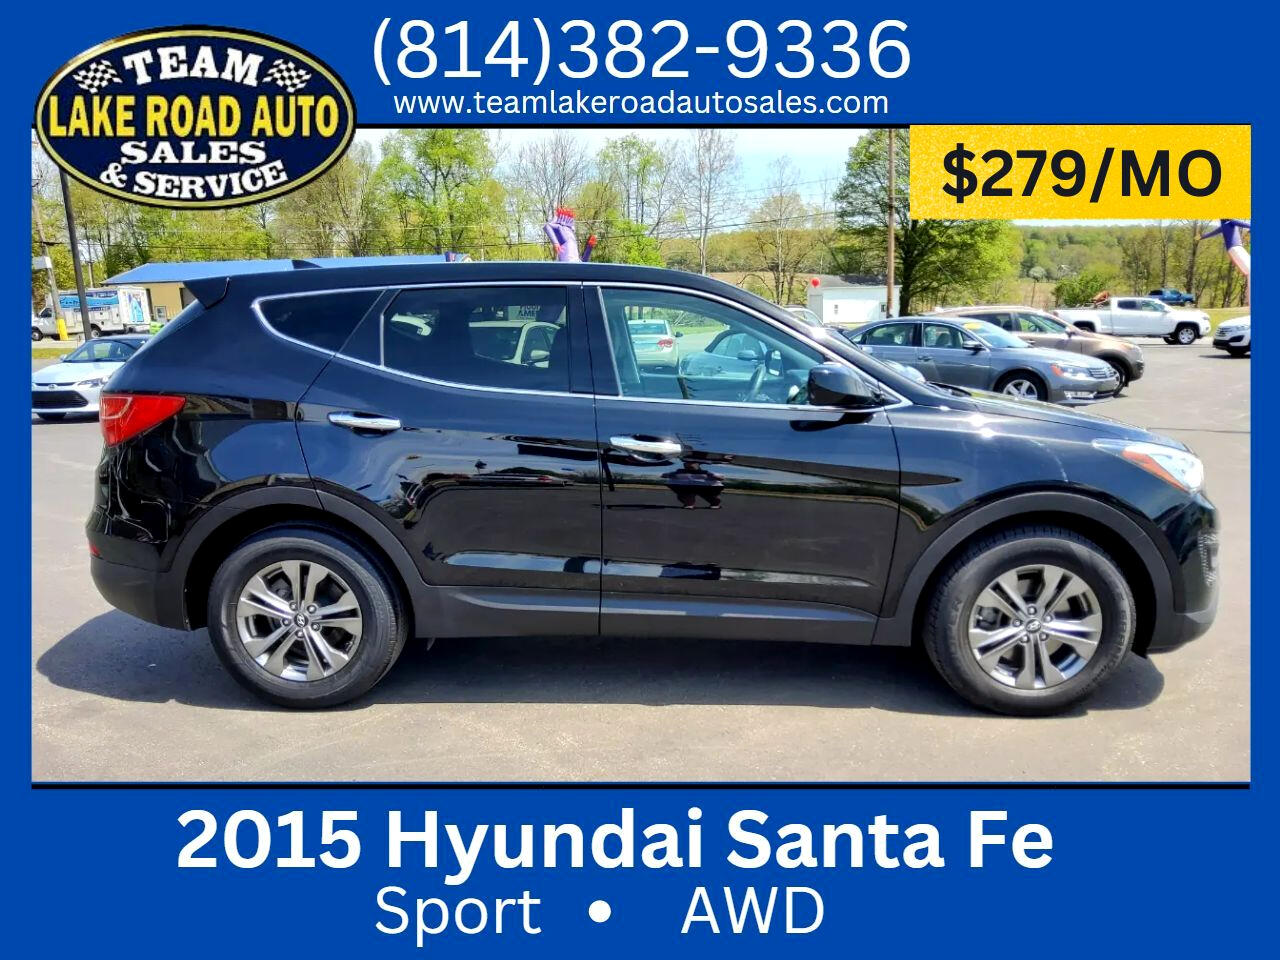 2015 Hyundai Santa Fe Sport AWD 4dr 2.4